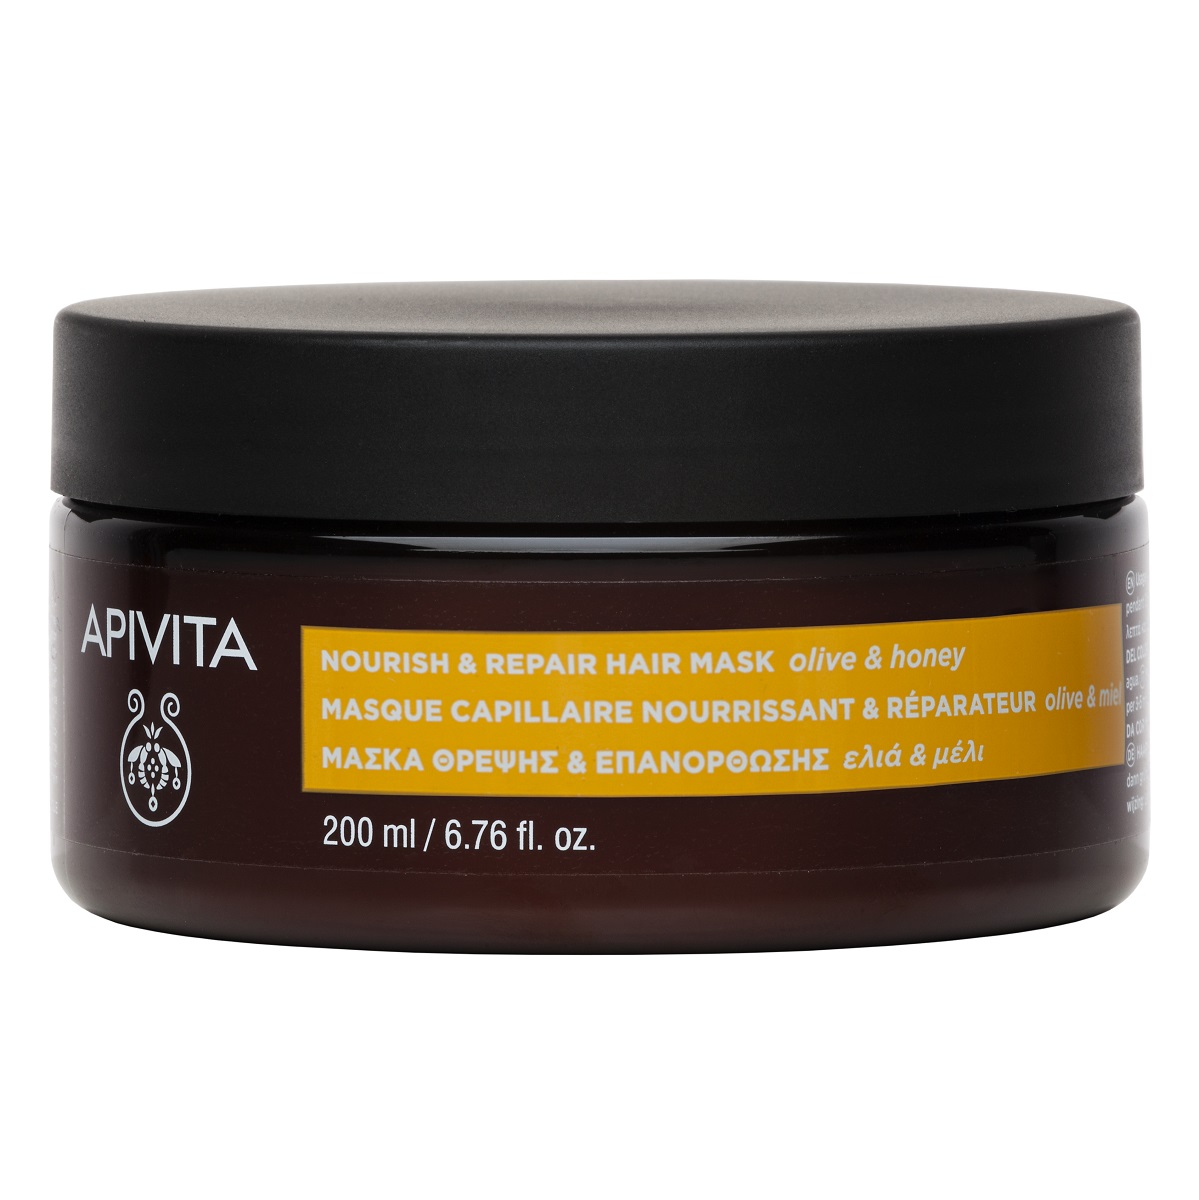 Apivita Питательная и восстанавливающая маска с оливой и медом, 200 мл (Apivita, Hair)